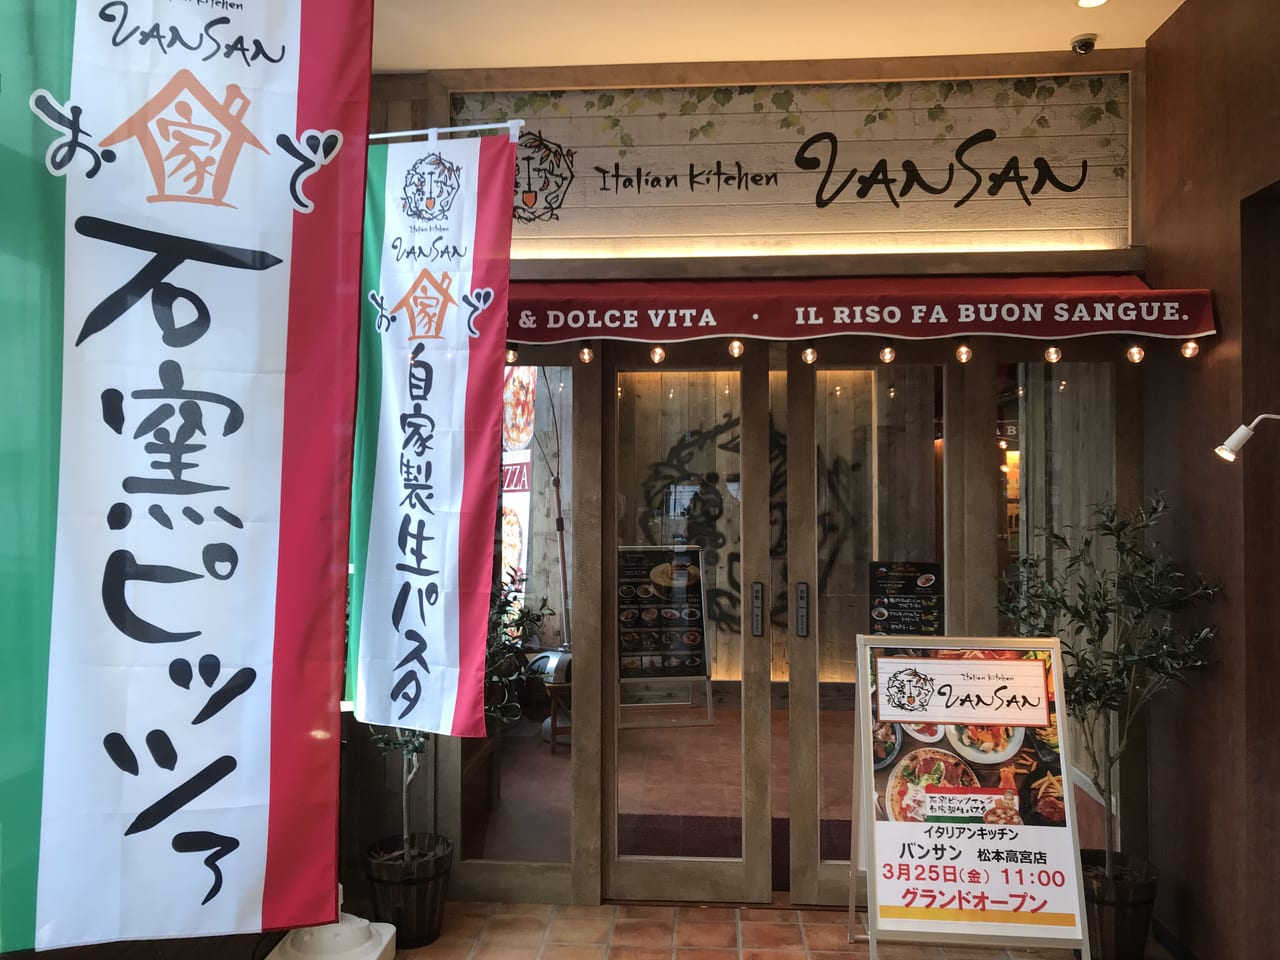 松本市 Italian Kitchen Vansan松本高宮店のオープン日がわかりました 22年3月25日グランドオープンです 号外net 松本